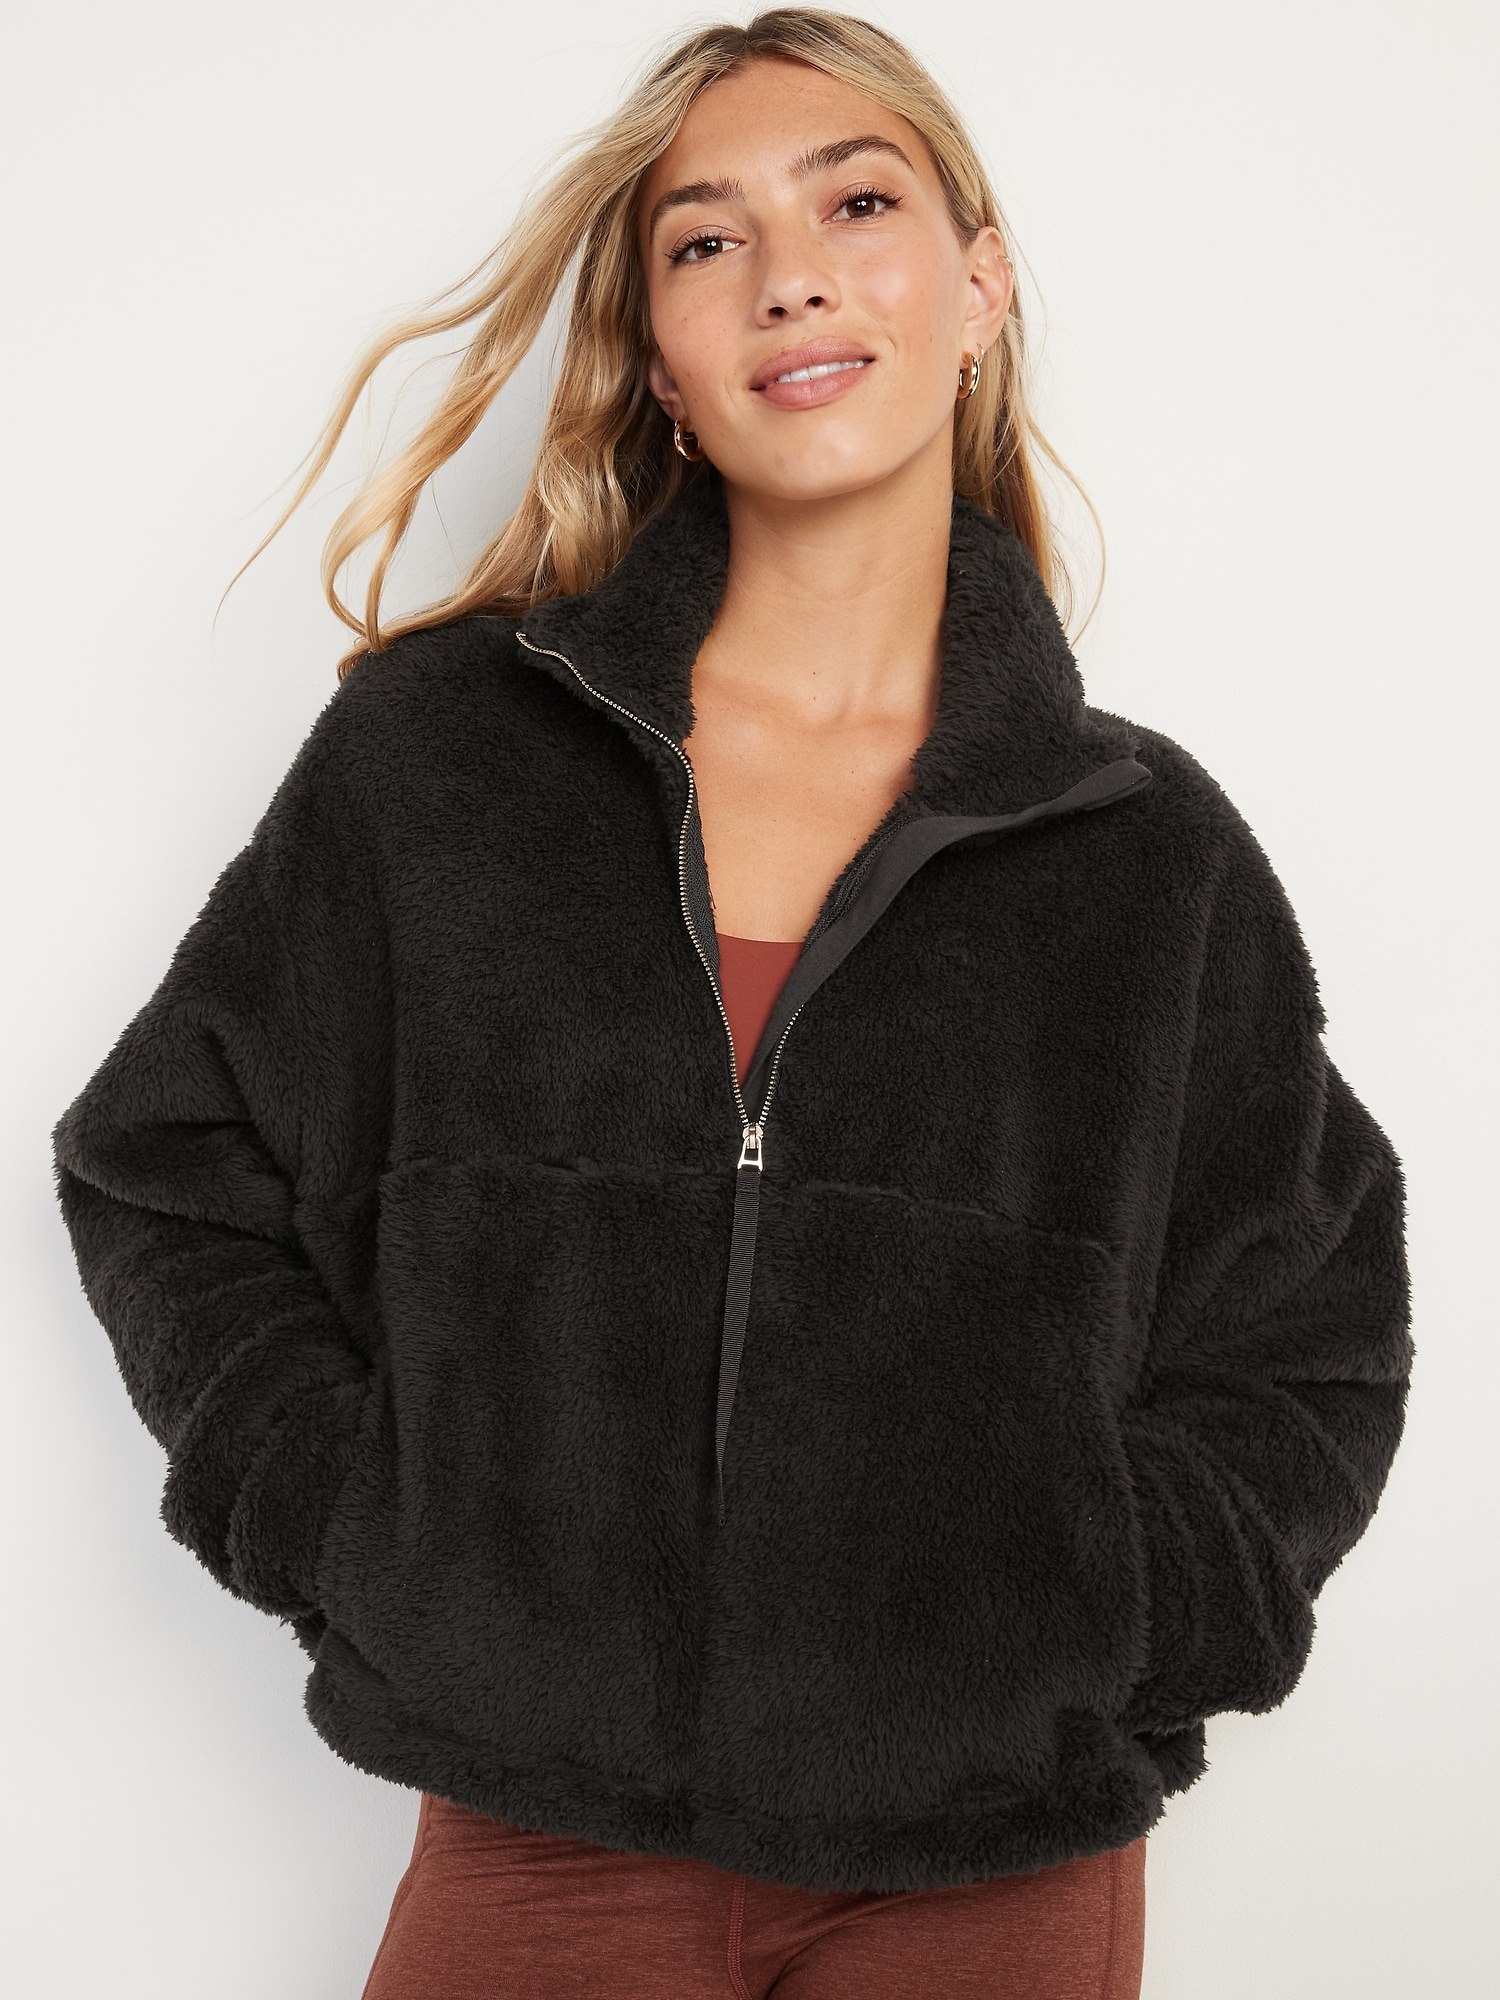 High-Neck Half-Zip Sherpa Sweatshirt for Women